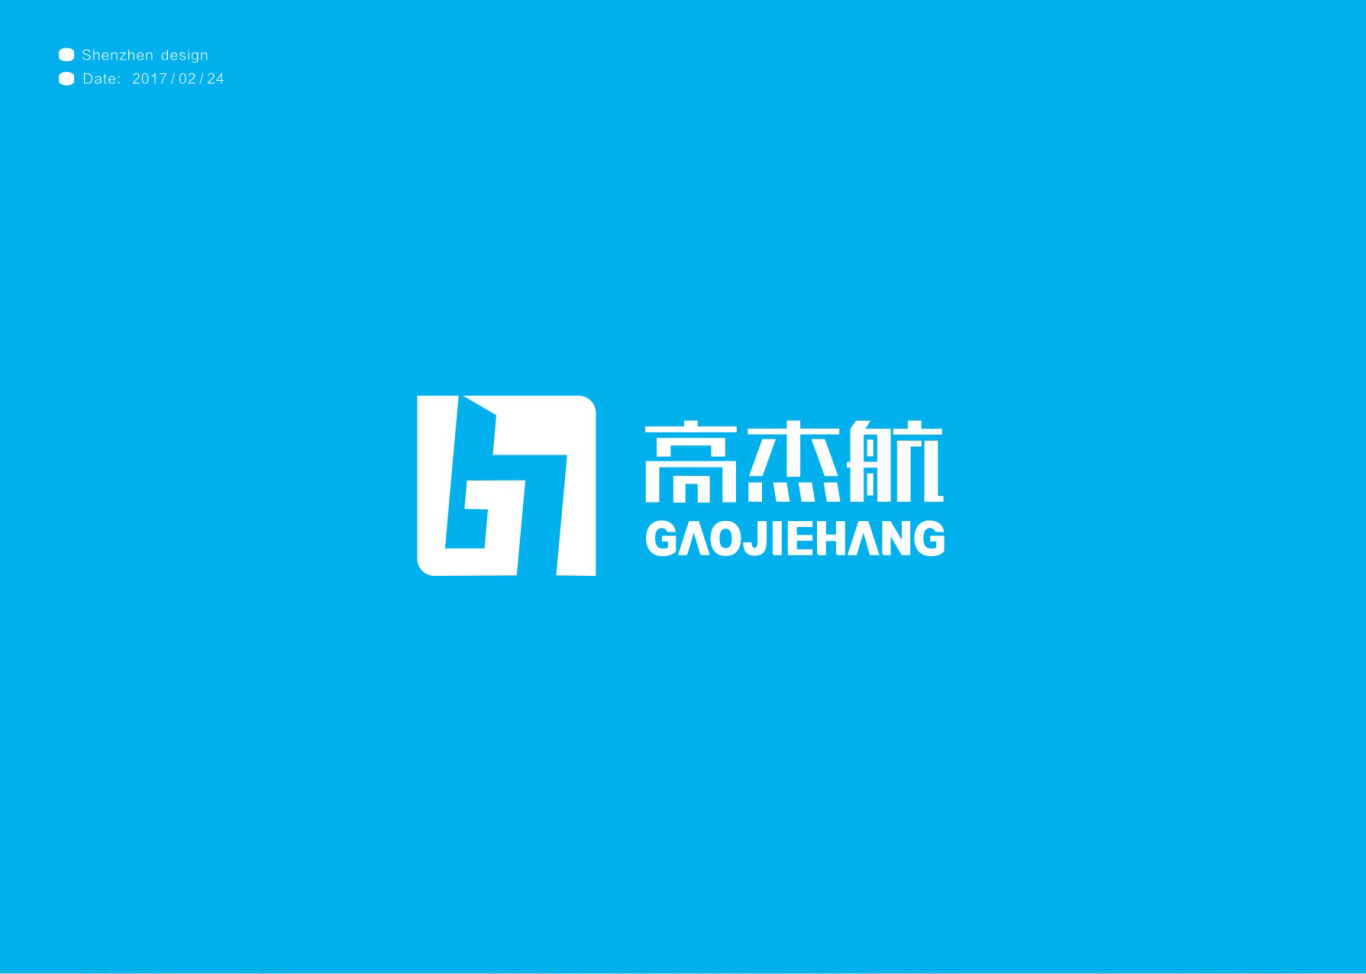 高杰航电子科技公司logo设计图2